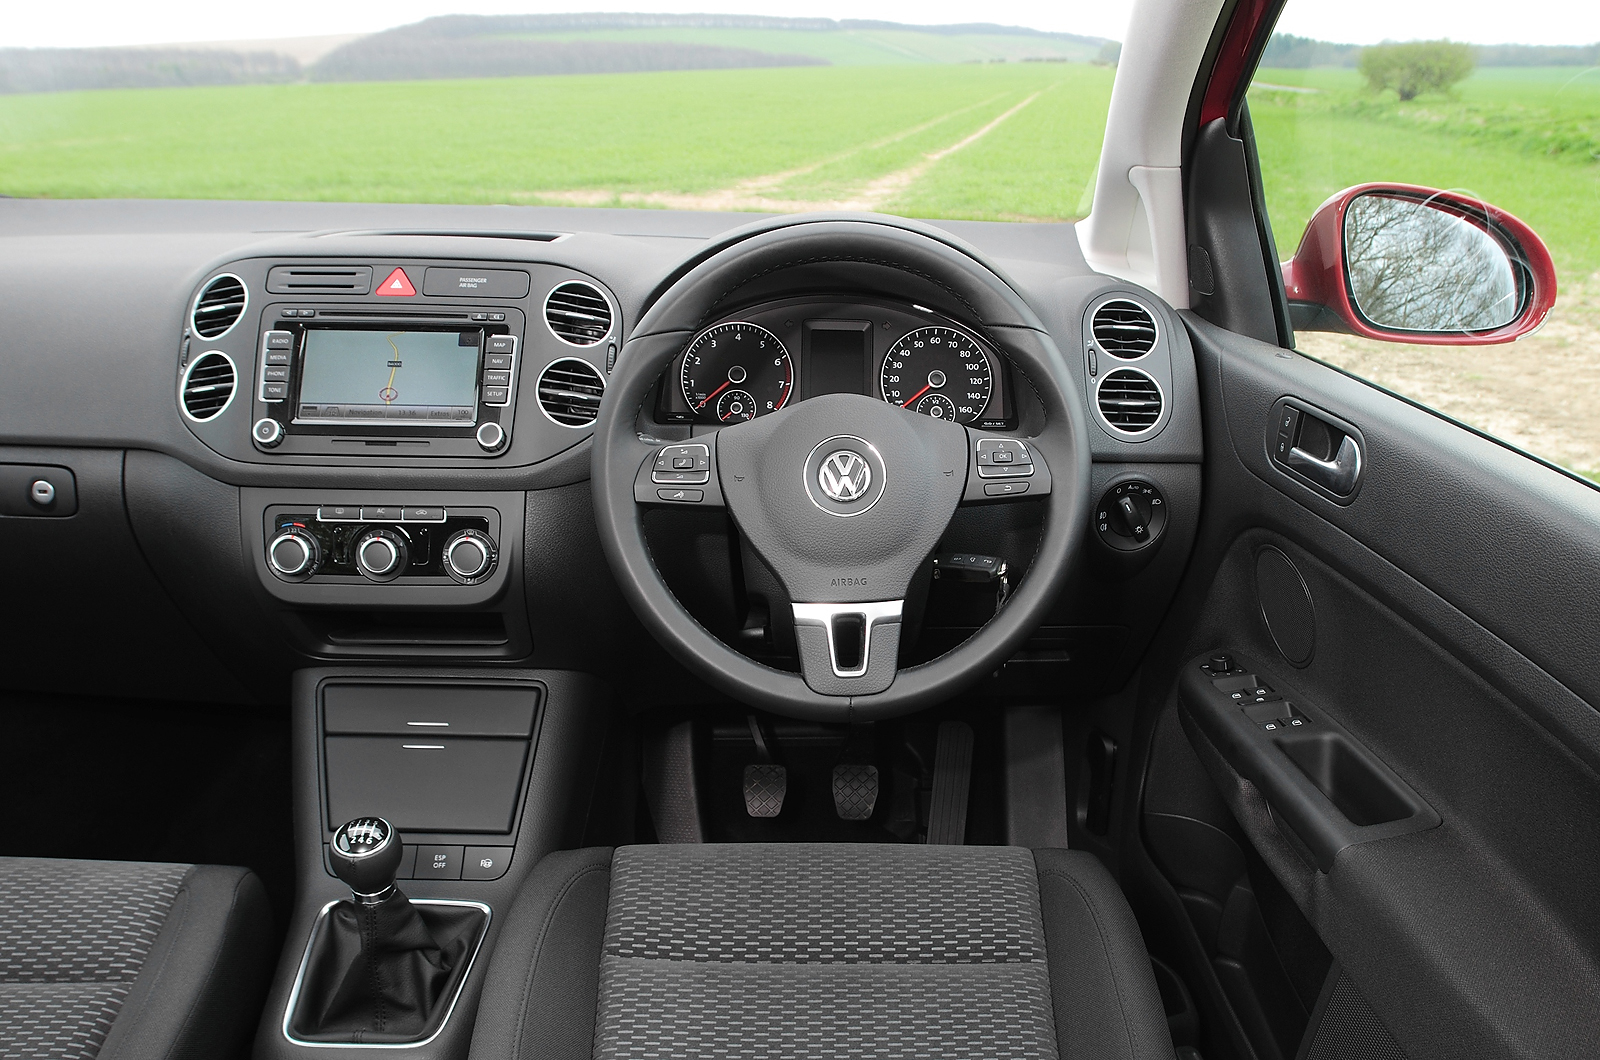 Volkswagen Golf Plus dashboard